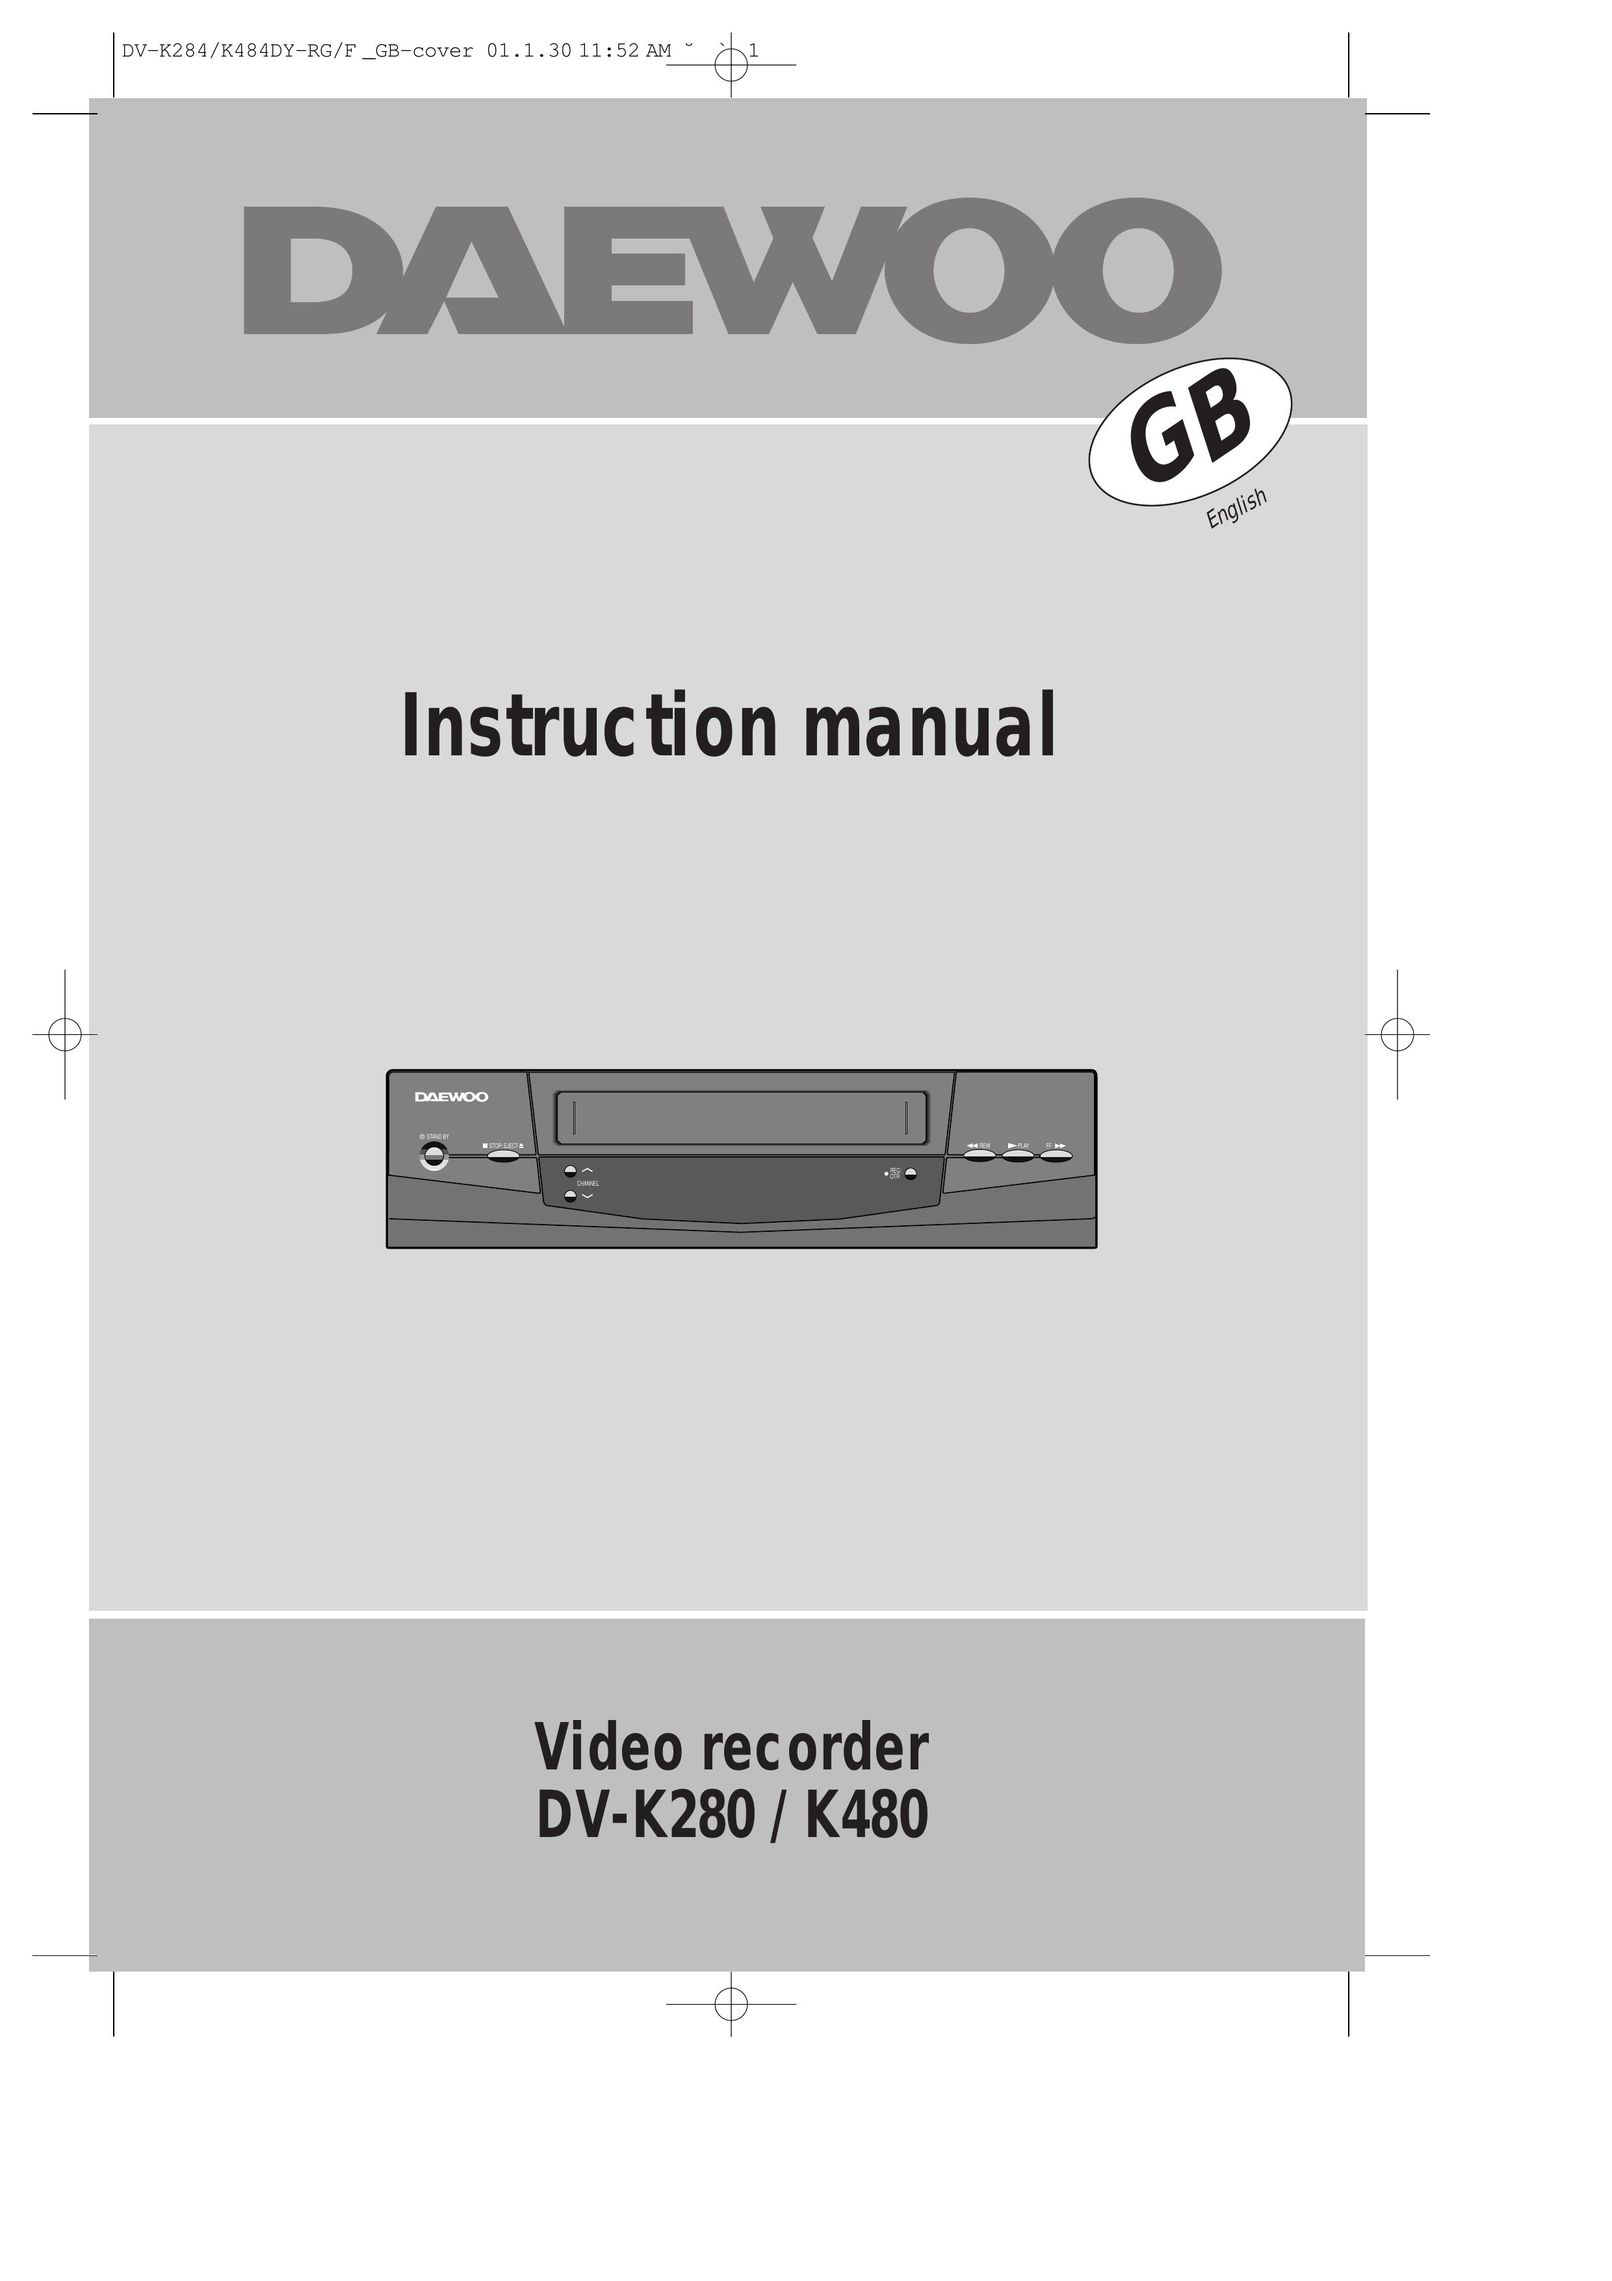 Daewoo DV-K280 VCR User Manual